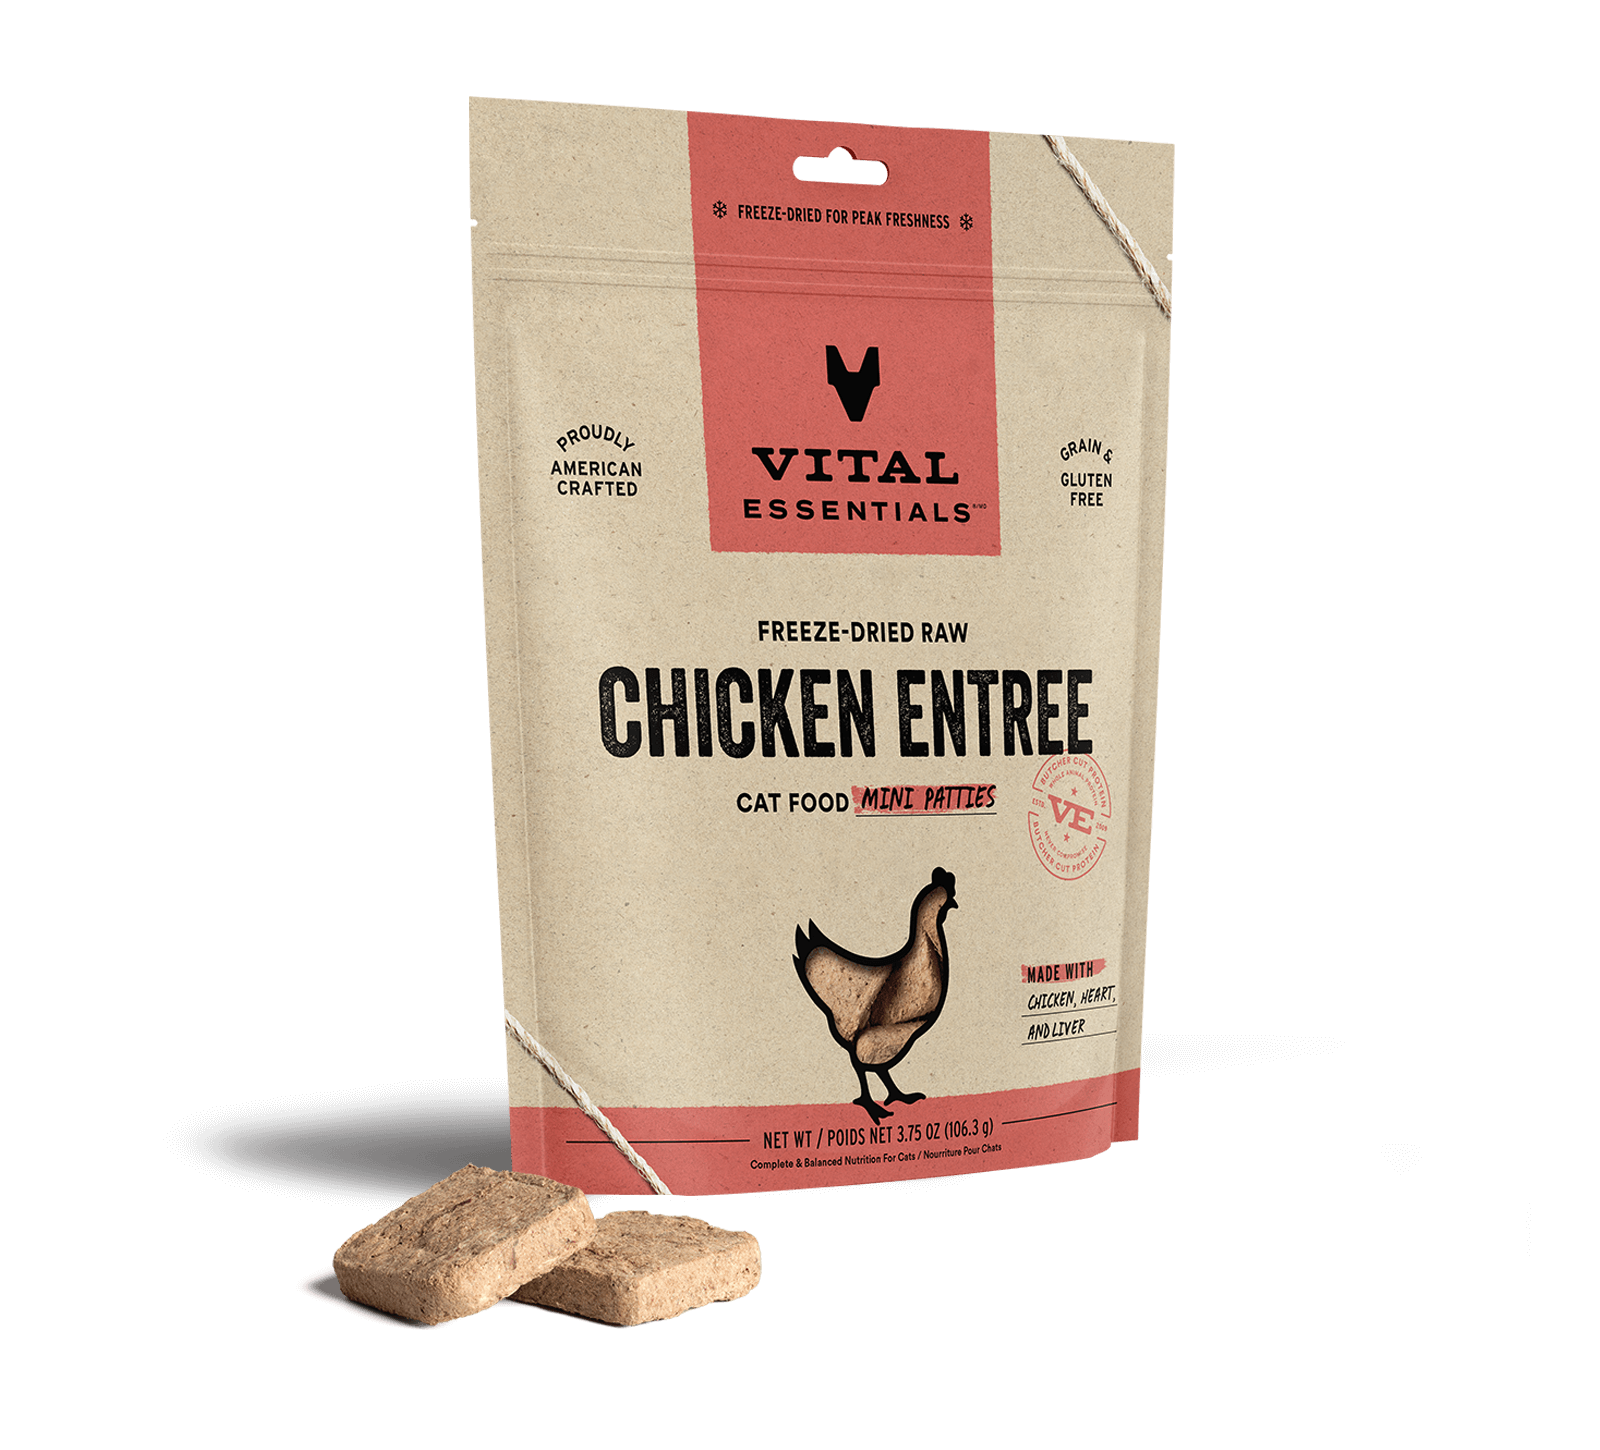 Vital Essentials Freeze-Dried Raw Chicken Entree Cat Food Mini Patties, 3.75 oz - Health/First Aid